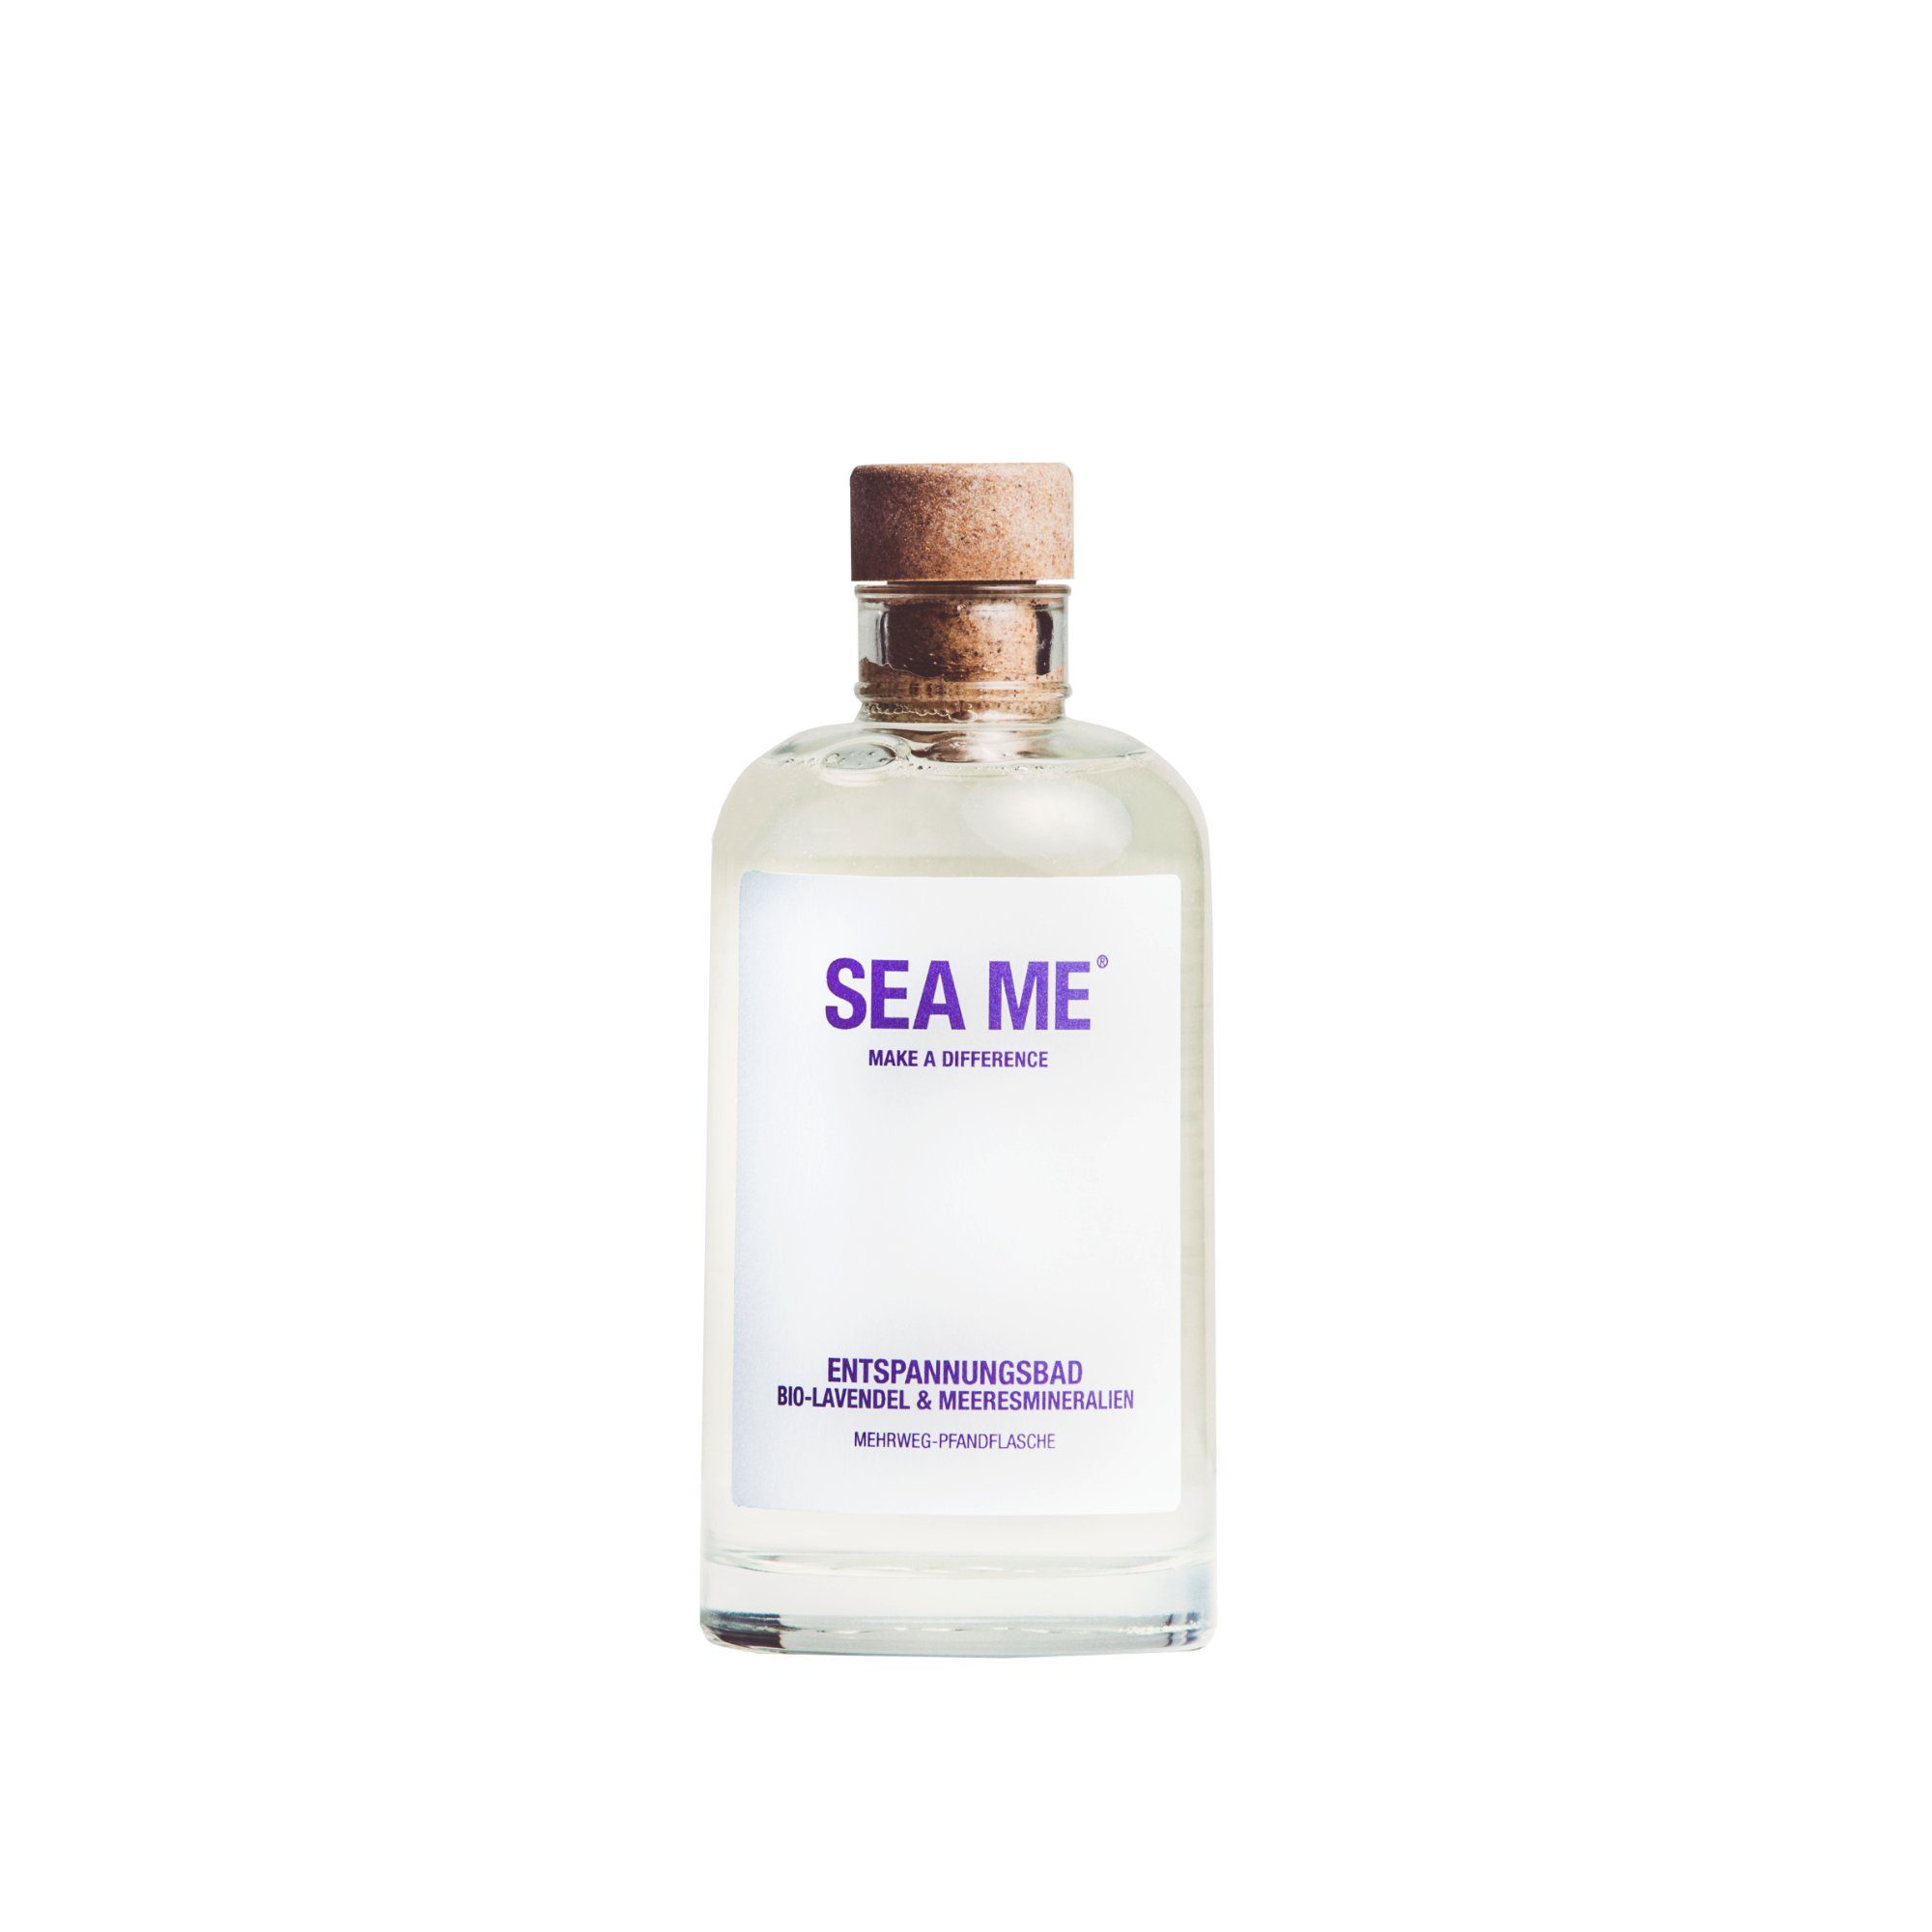 Badezusatz, Mehrweg-Glas, Bio-Lavendel, ME im SEA mit 250ml 250ml, vegan, im Entspannungsbad, Glas